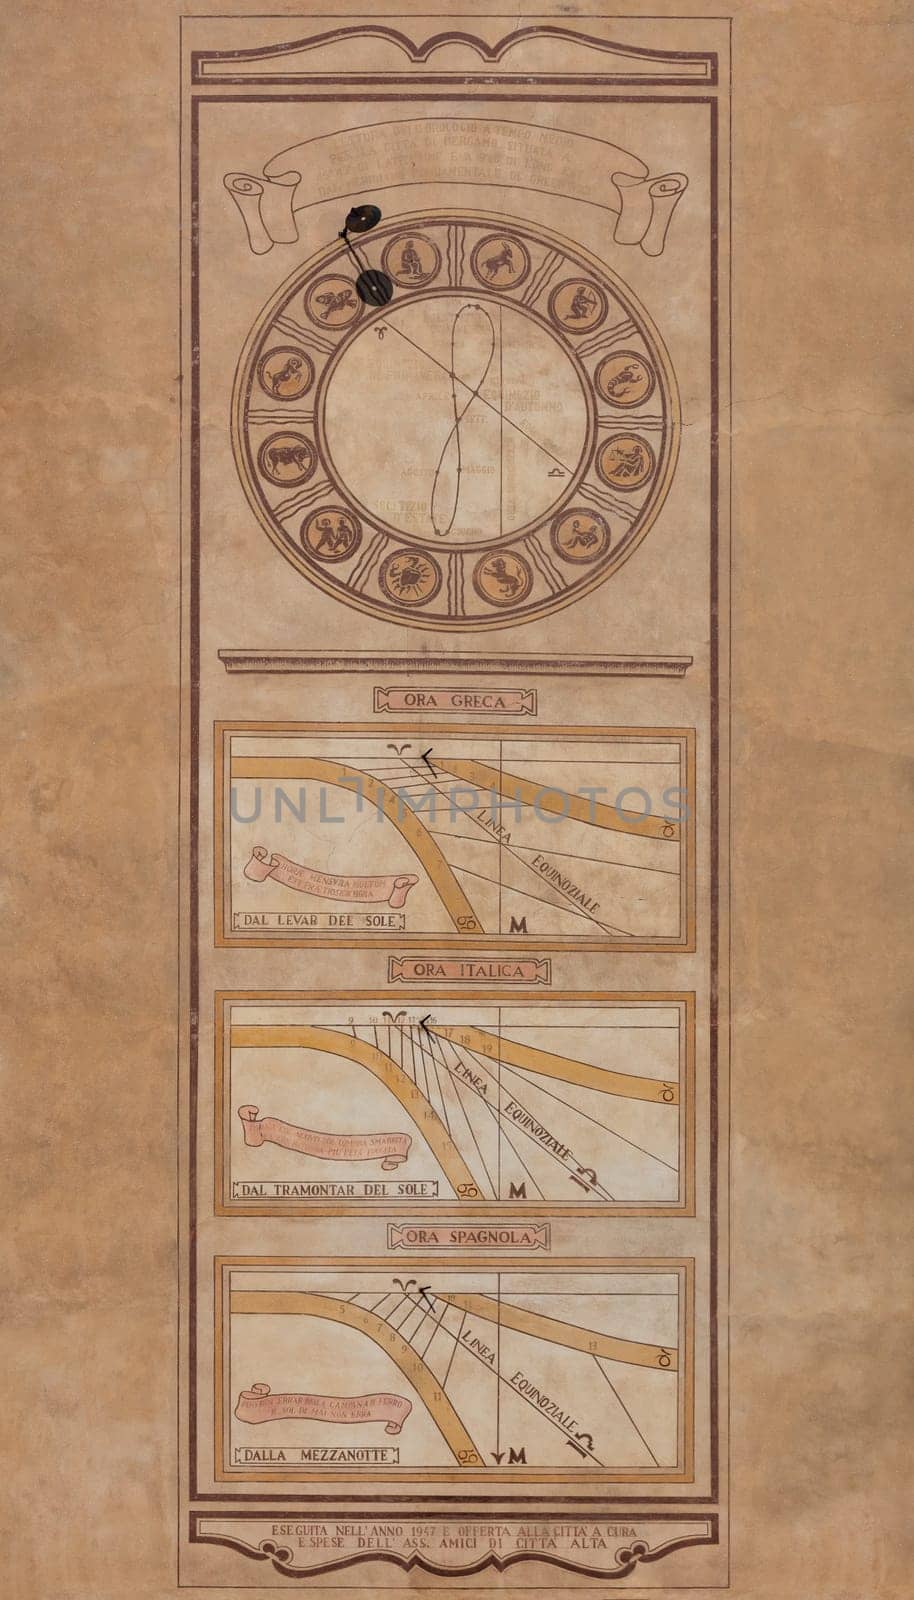 Sundial in Bergamo by mot1963